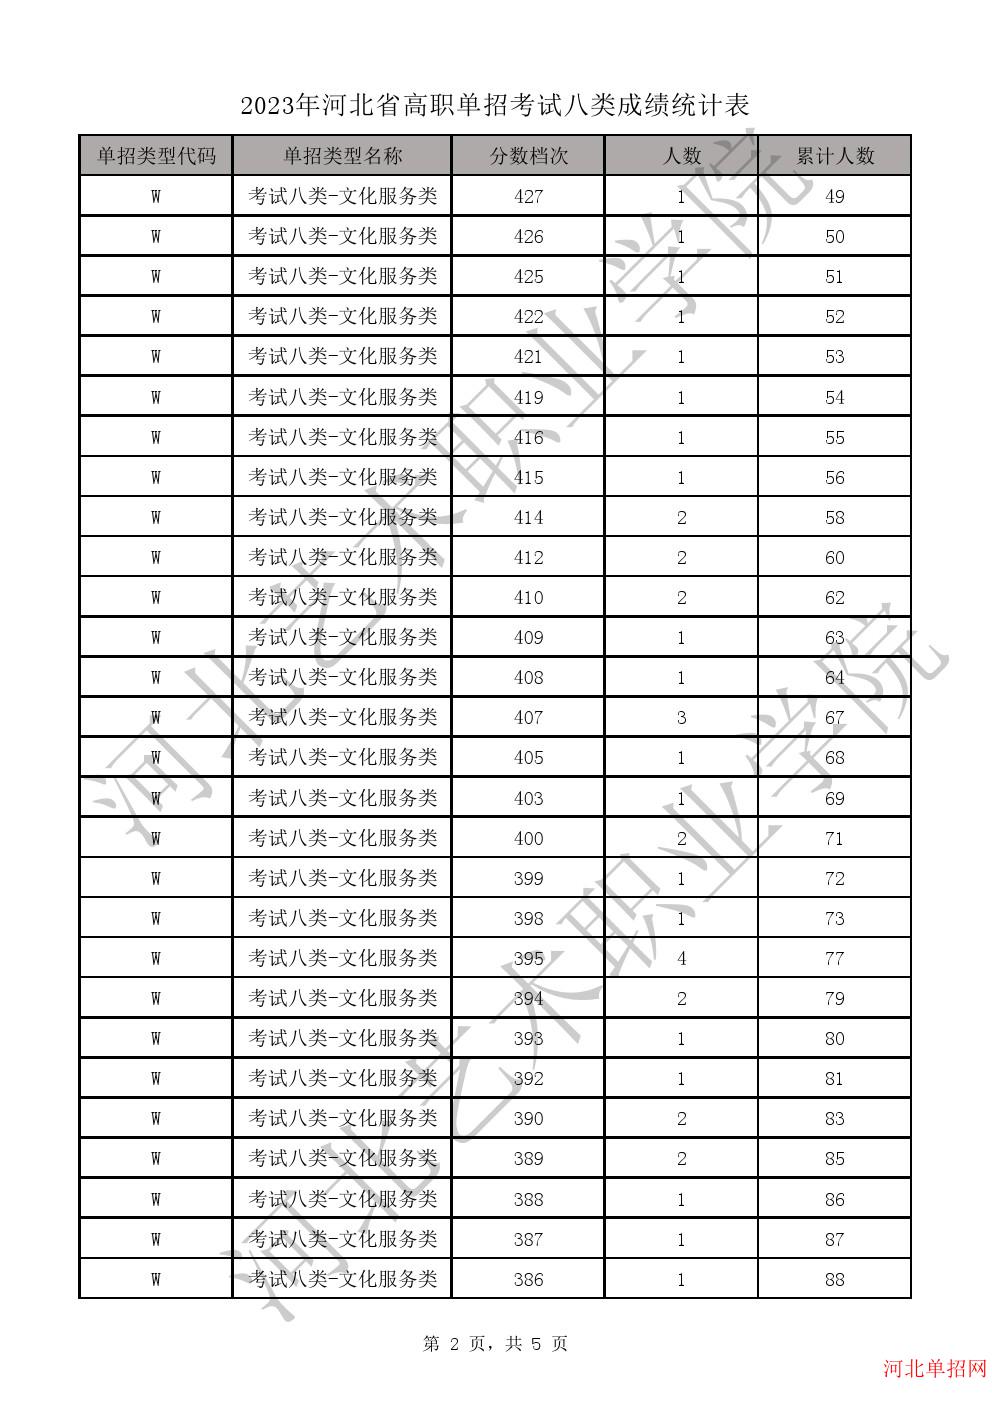 2023年河北省高职单招考试八类成绩统计表-W文化服务类一分一档表 图2